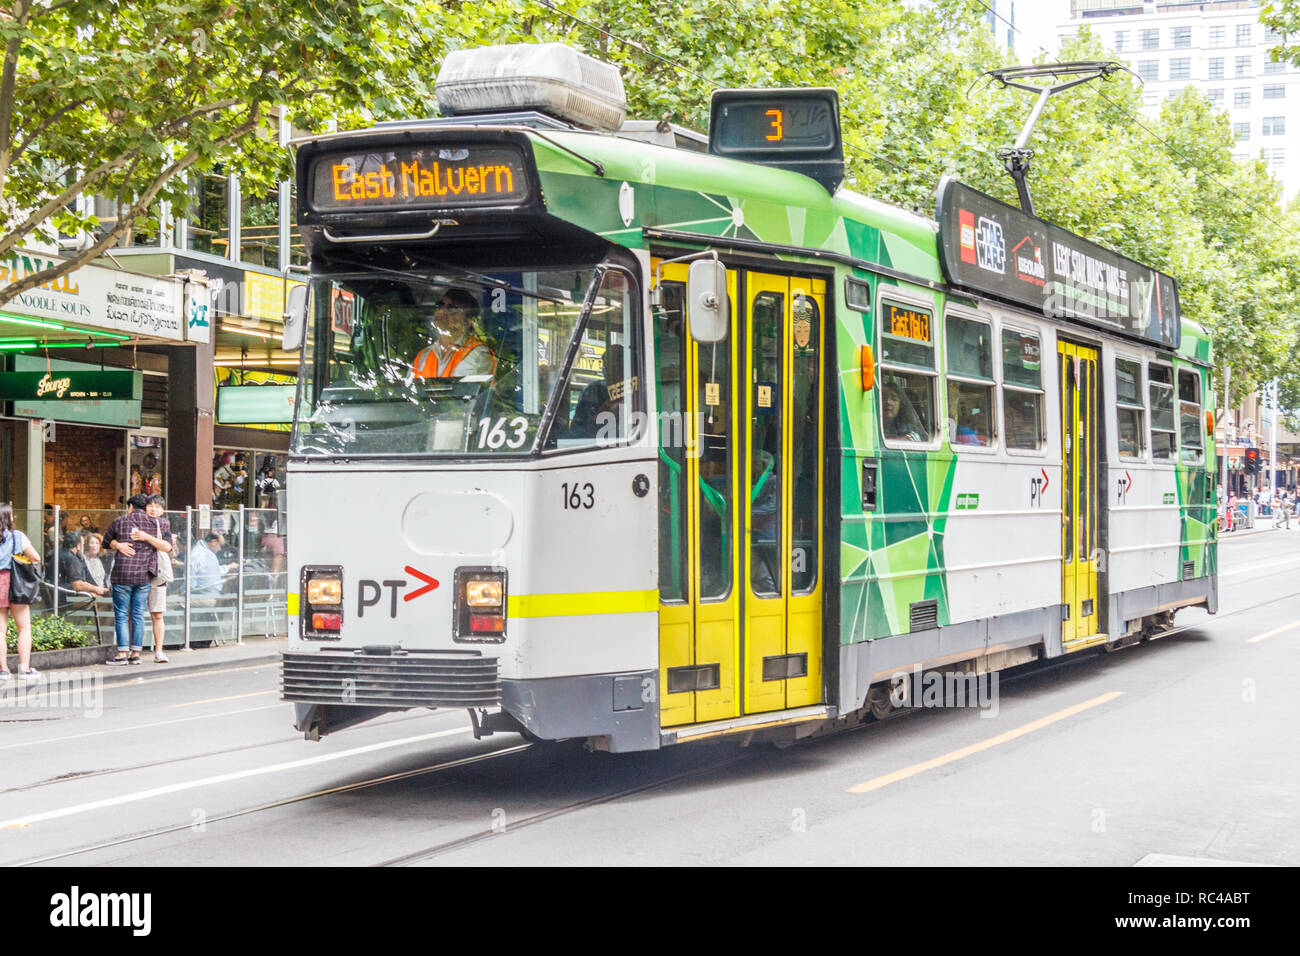 Melbourne, Australien - 21. Februar 2018: Eine moderne elektrische Straßenbahn. Die Stadt verfügt über ein gutes Netz von Straßenbahnen. Stockfoto